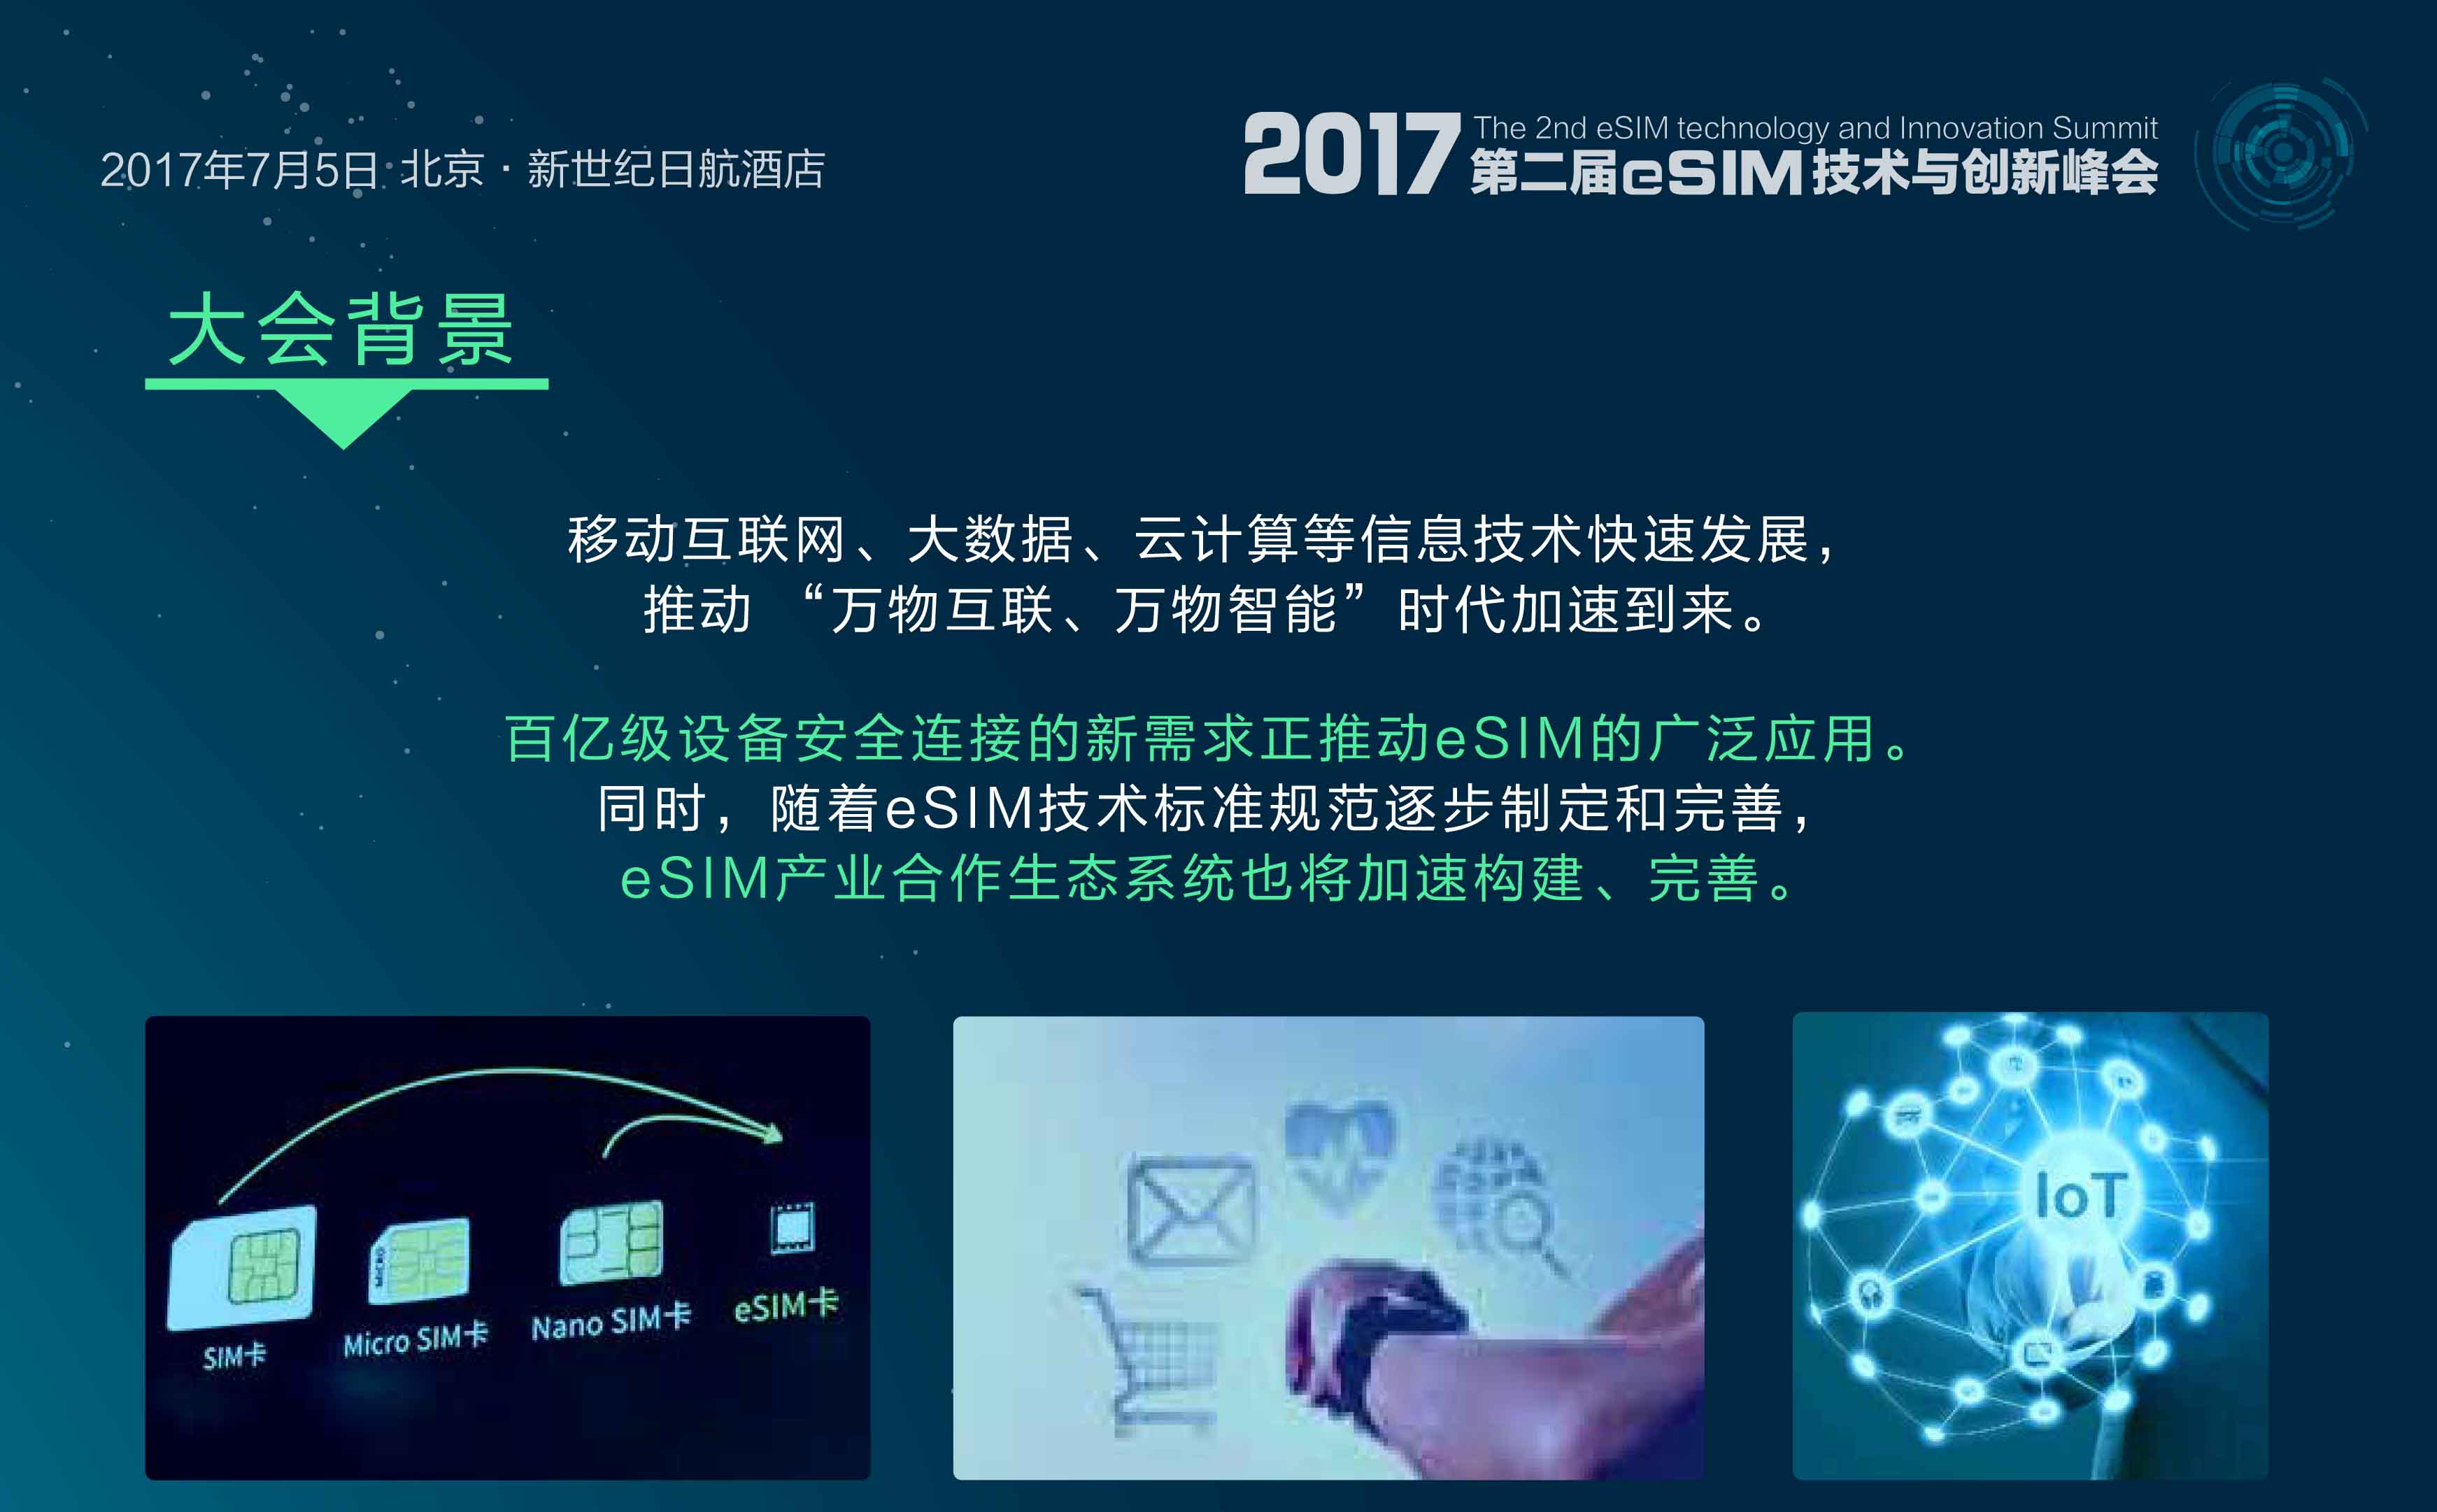 2017第二届eSIM技术与创新峰会